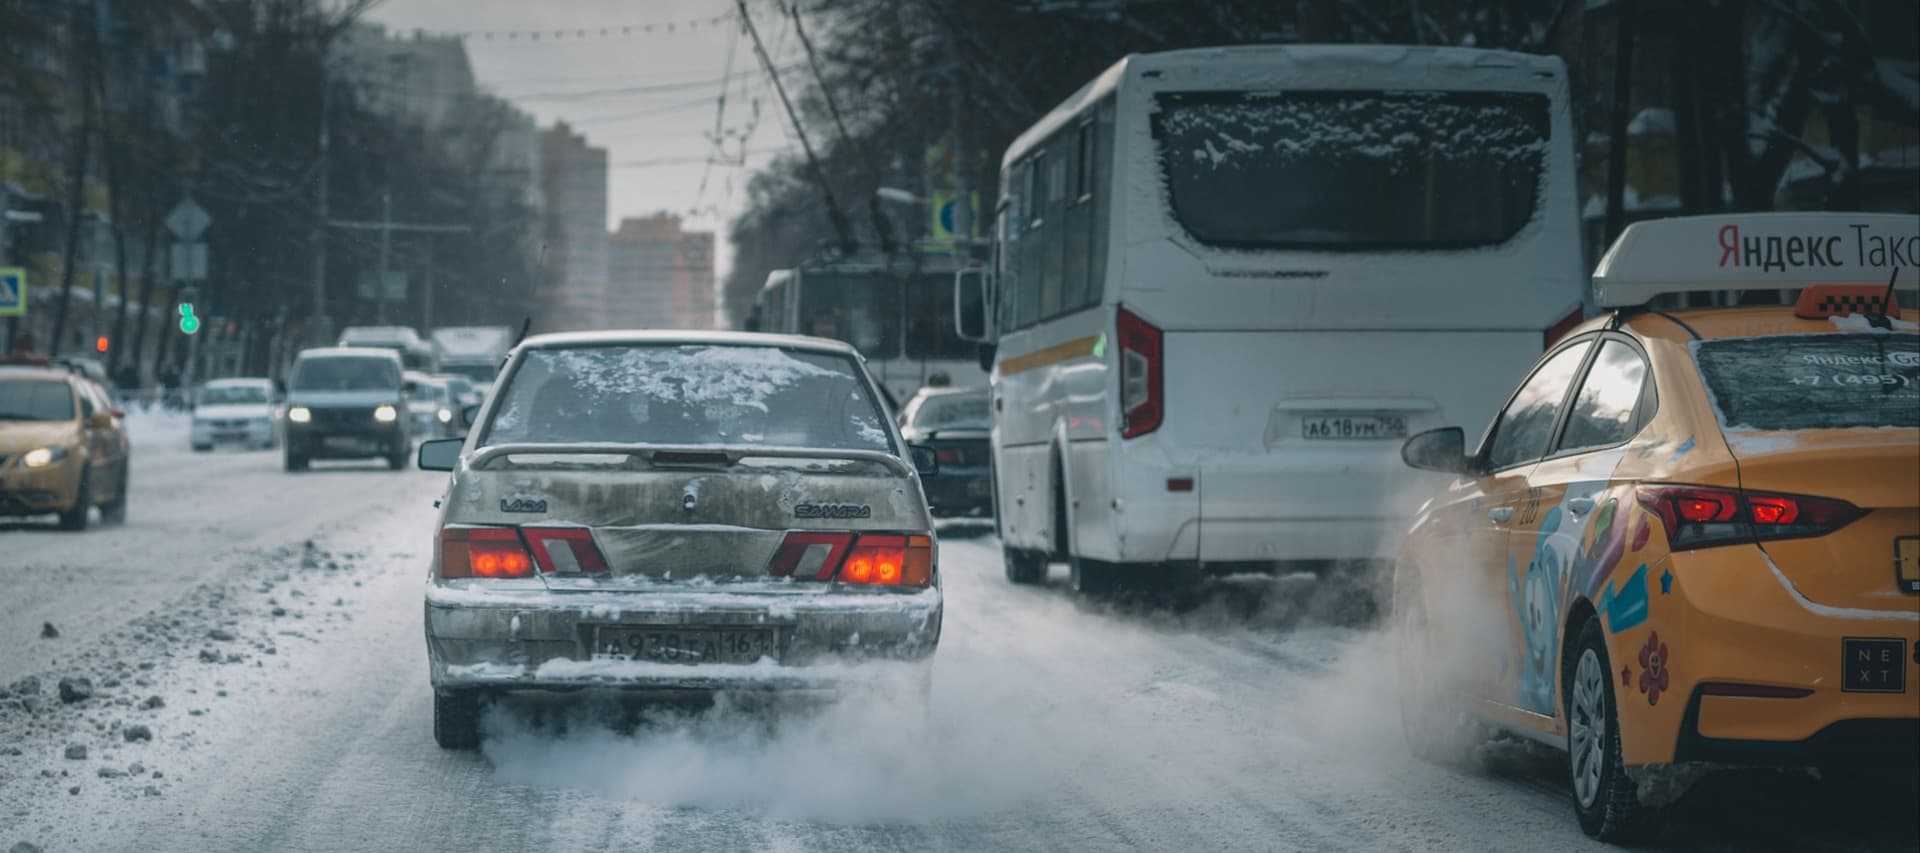 Фото новости: "«Яндекс.Такси»: в России не хватает 80 000 таксистов"